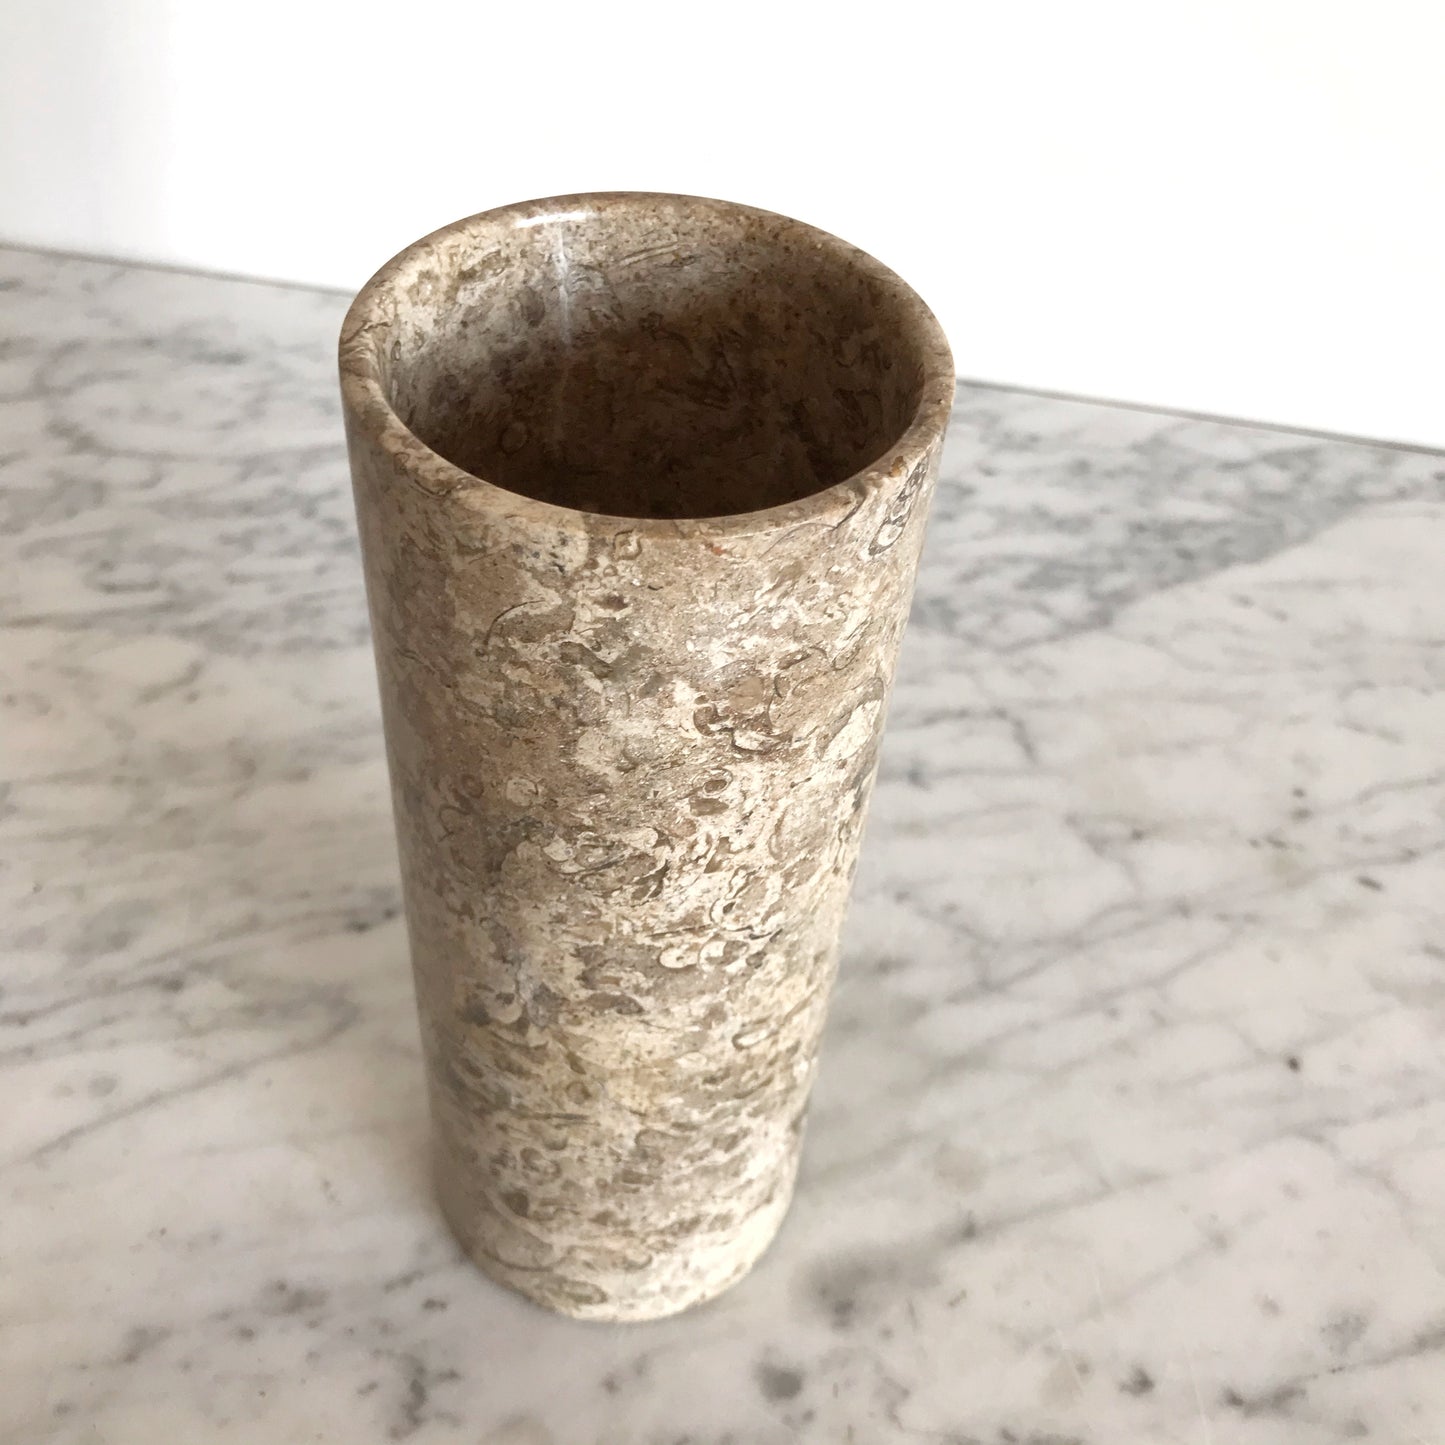 Single XL Polished Fossil Stone Cylinder Vase, 8"